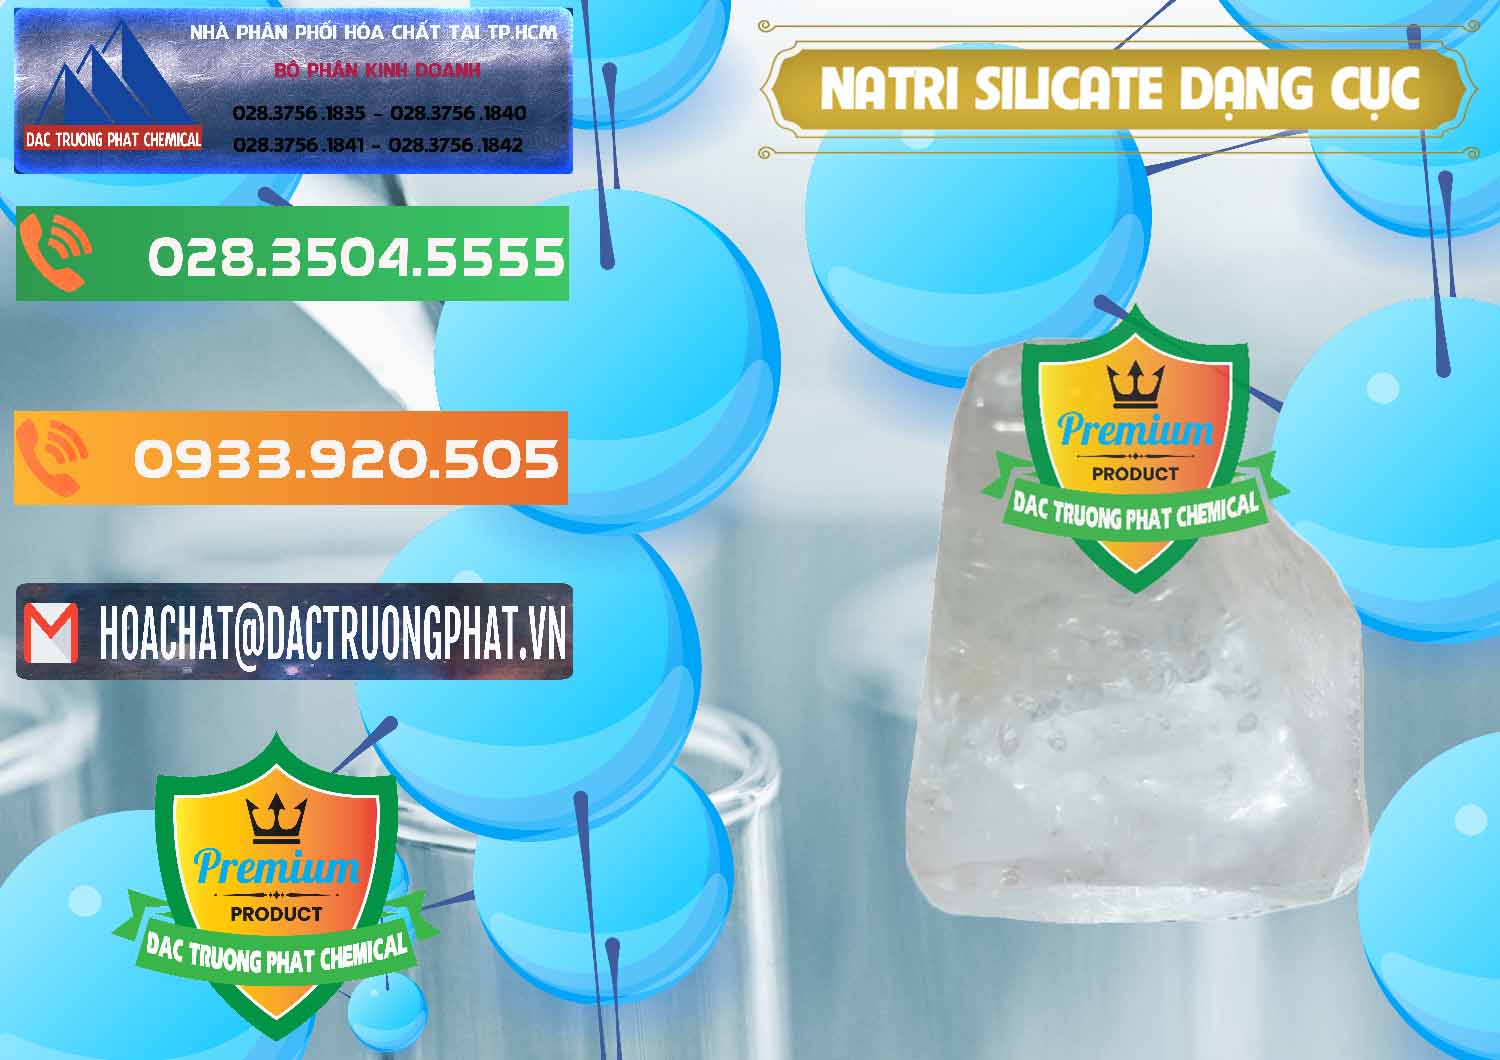 Chuyên phân phối _ bán Natri Silicate - Na2SiO3 - Keo Silicate Dạng Cục Ấn Độ India - 0382 - Cty nhập khẩu & phân phối hóa chất tại TP.HCM - hoachatxulynuoc.com.vn